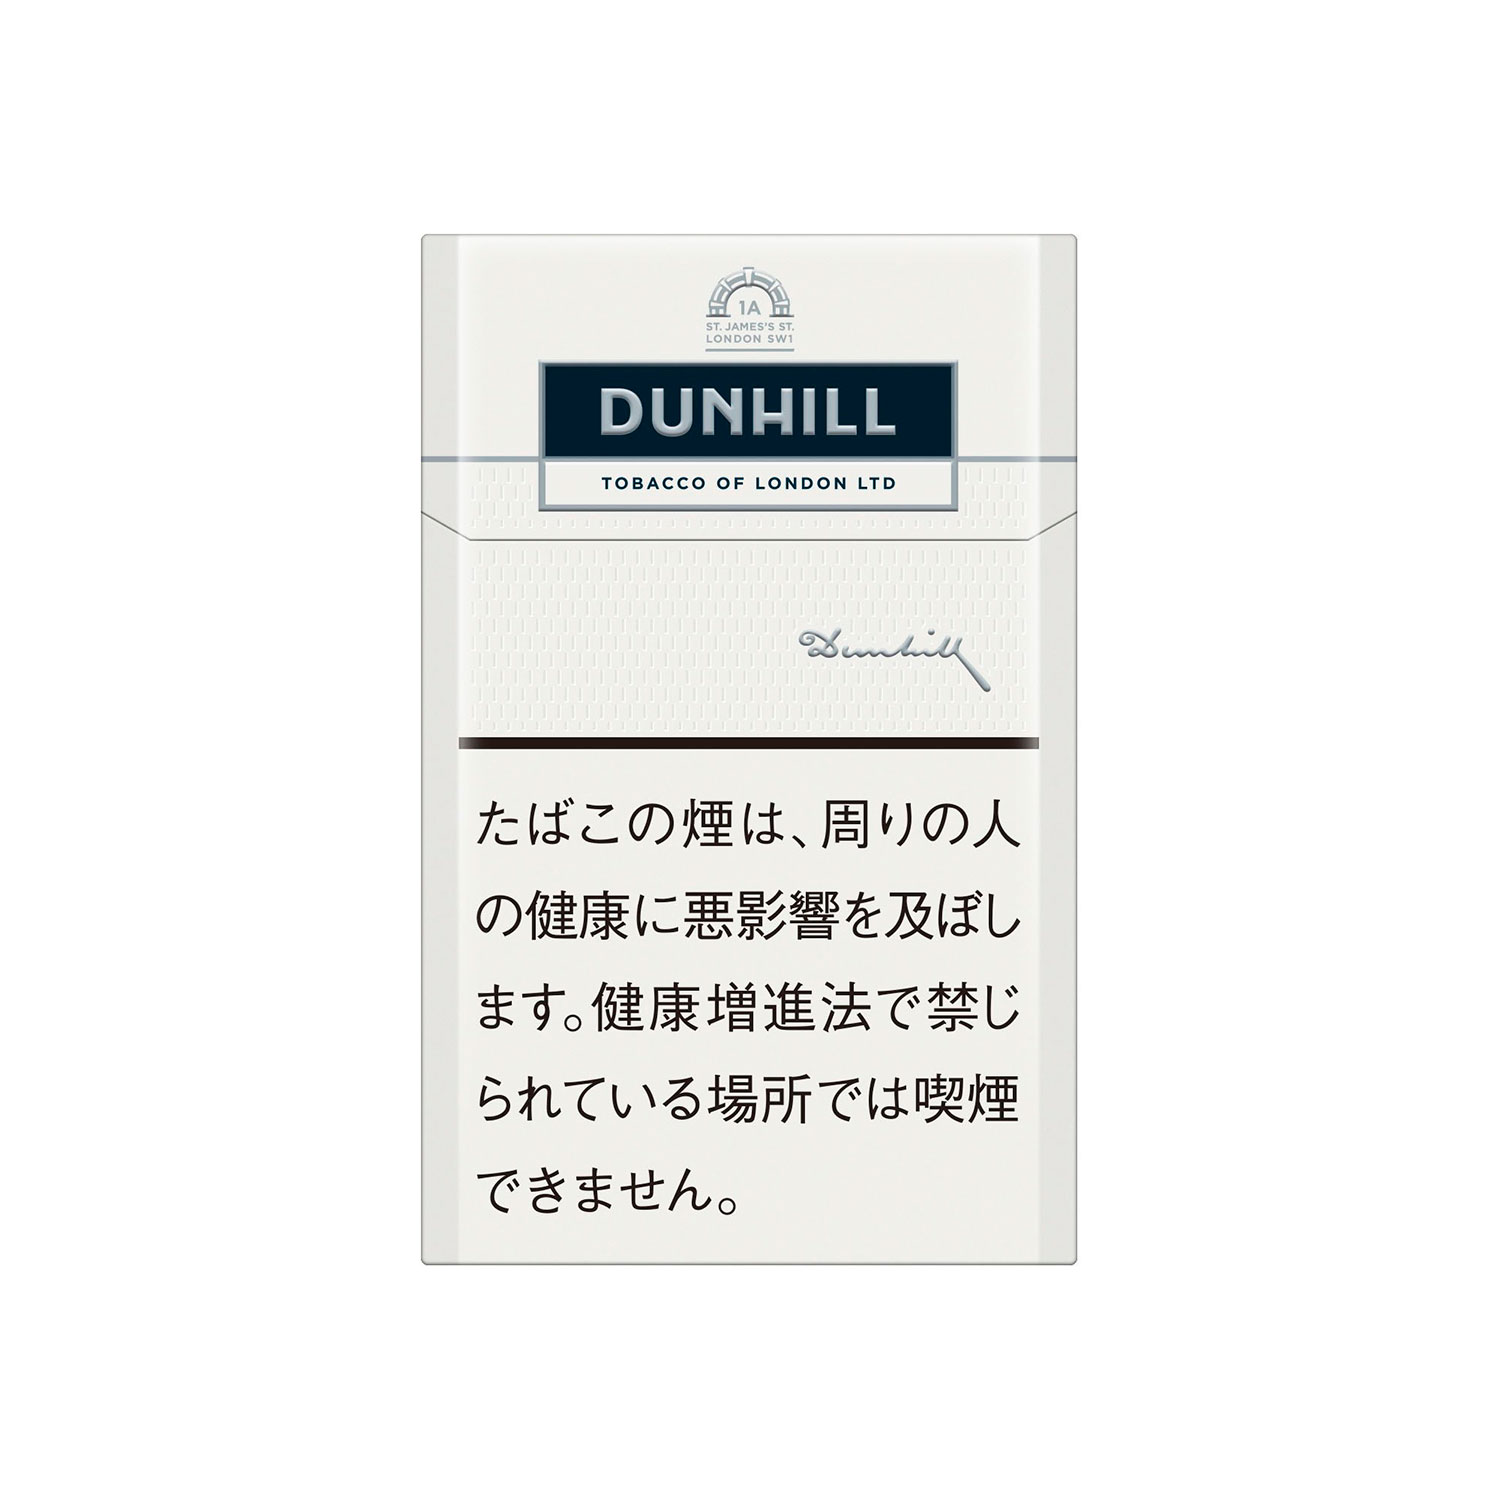 DUNHILL WHITE / Tar:1mg Nicotine:0.1mg